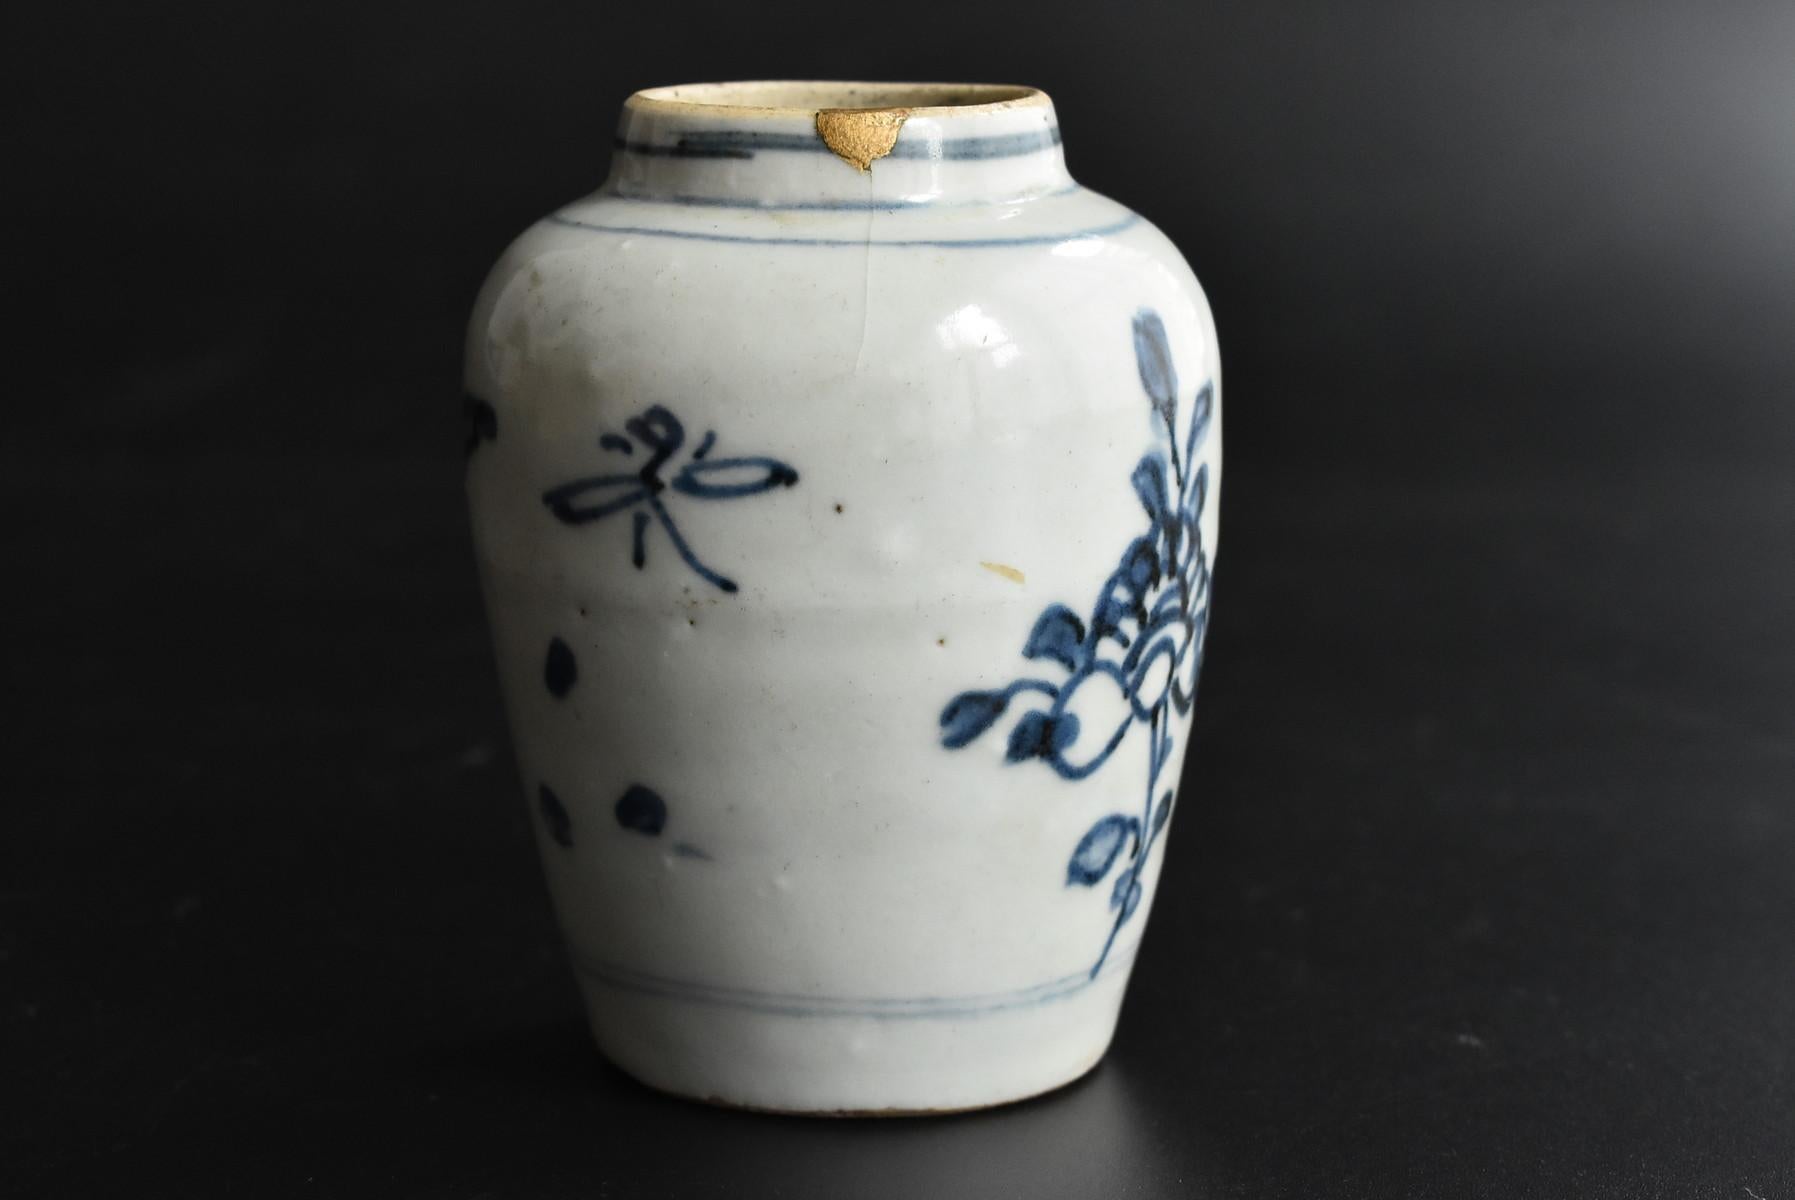 Glazed Chinese Antique White Porcelain Blue Dyed Jar / Small Vase / 1600-1700